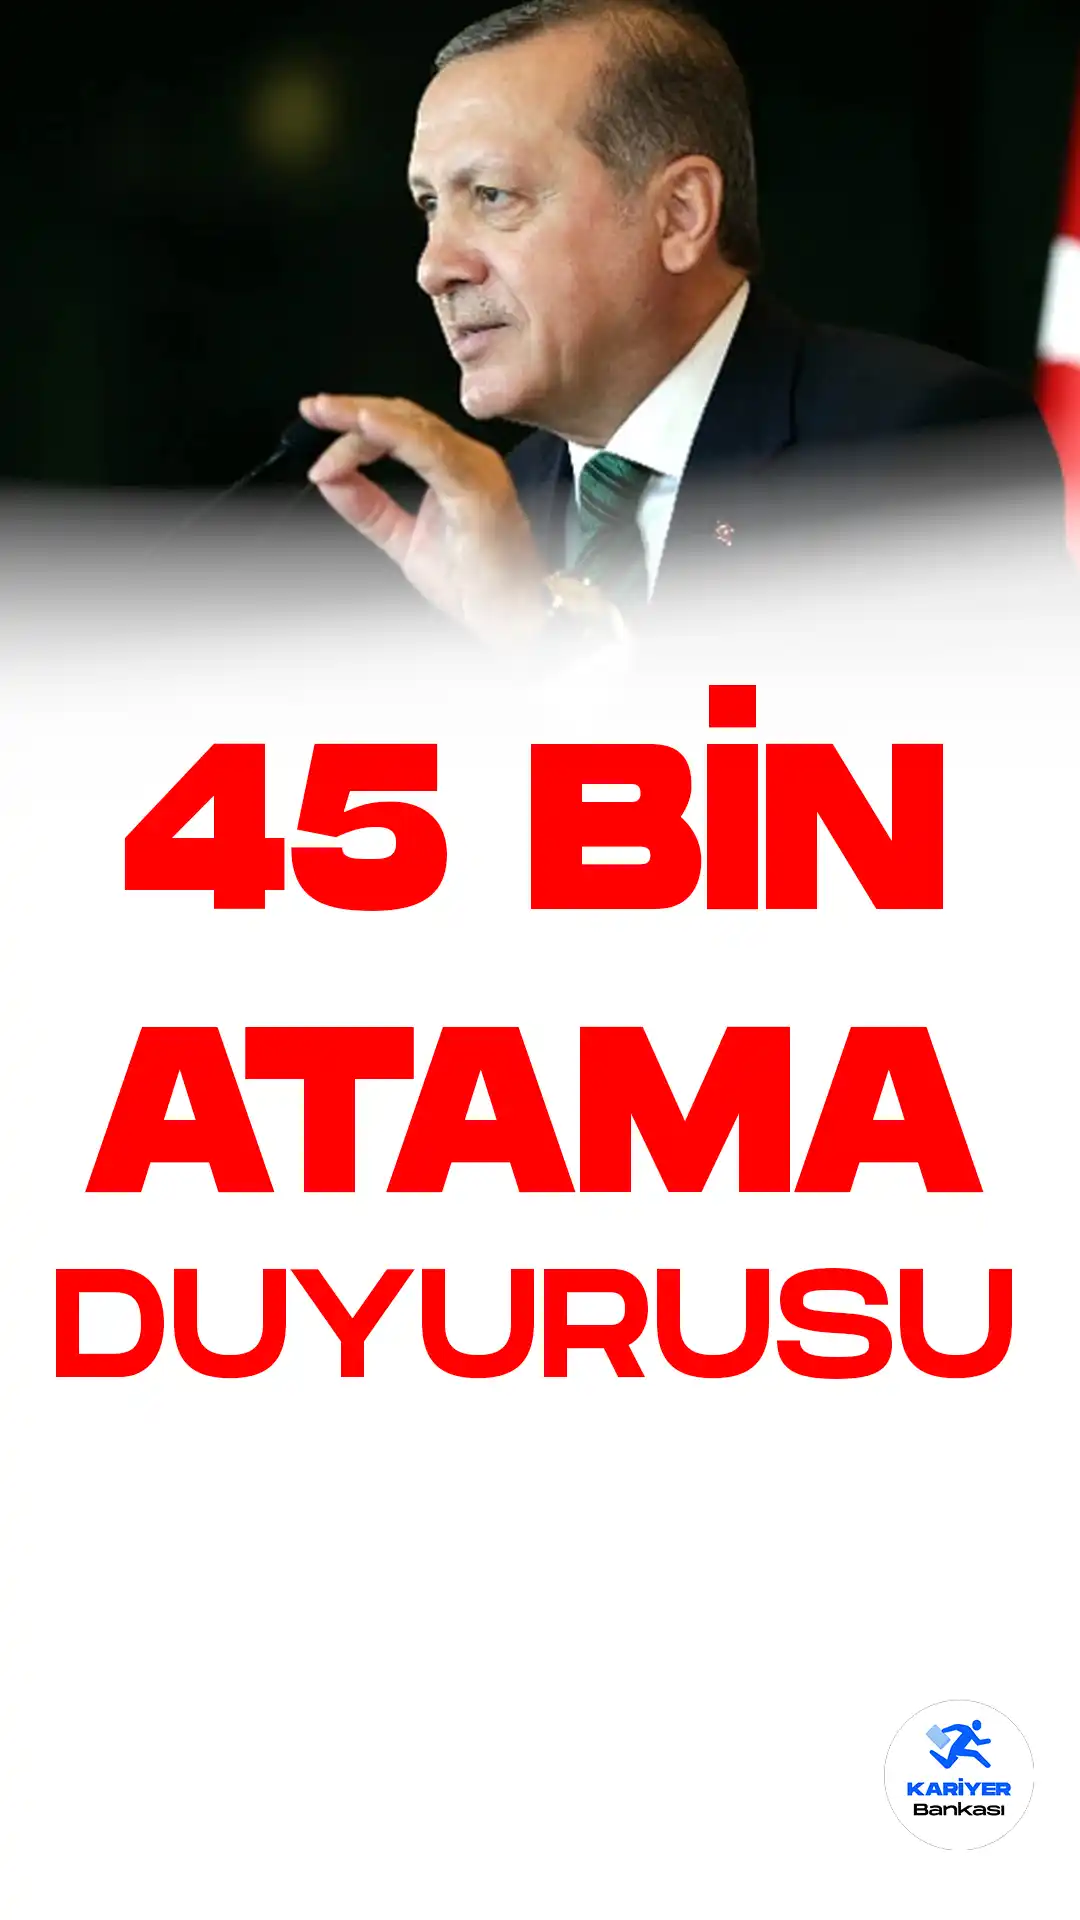 Cumhurbaşkanı erdoğan 45 bin öğretmen atamasını duyurdu.